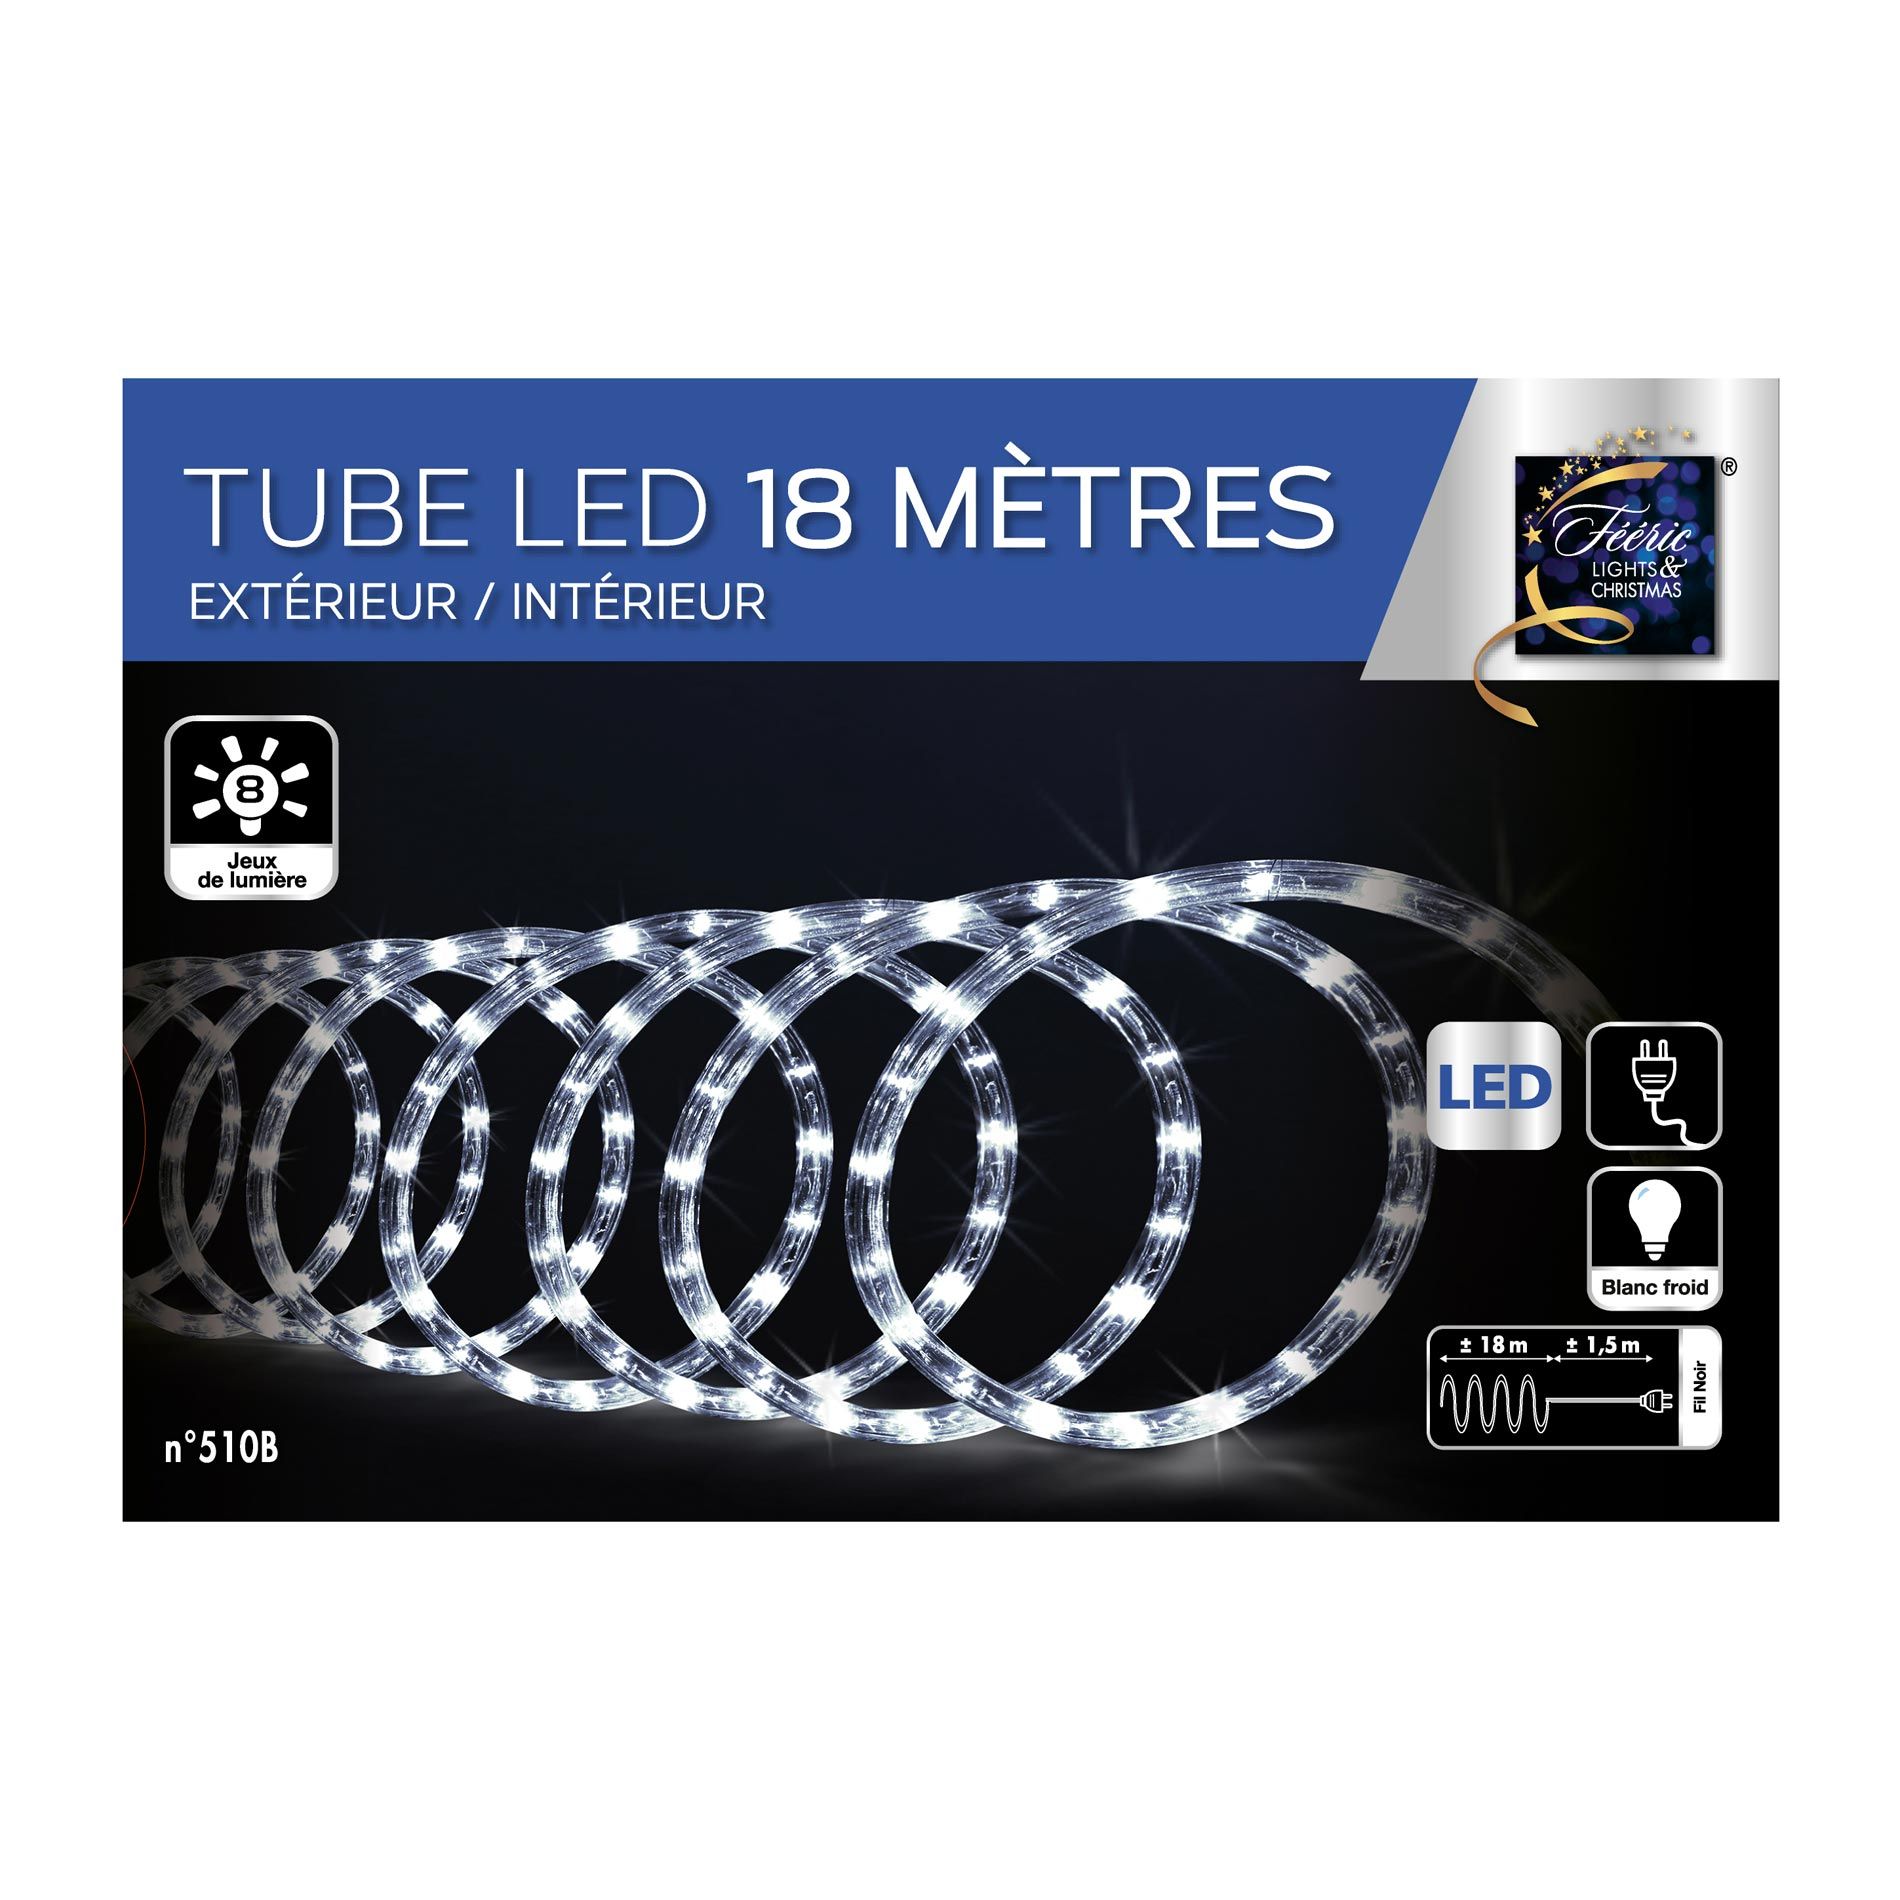 Tube lumineux 18 m Blanc froid 324 LED - Décoration lumineuse - Eminza